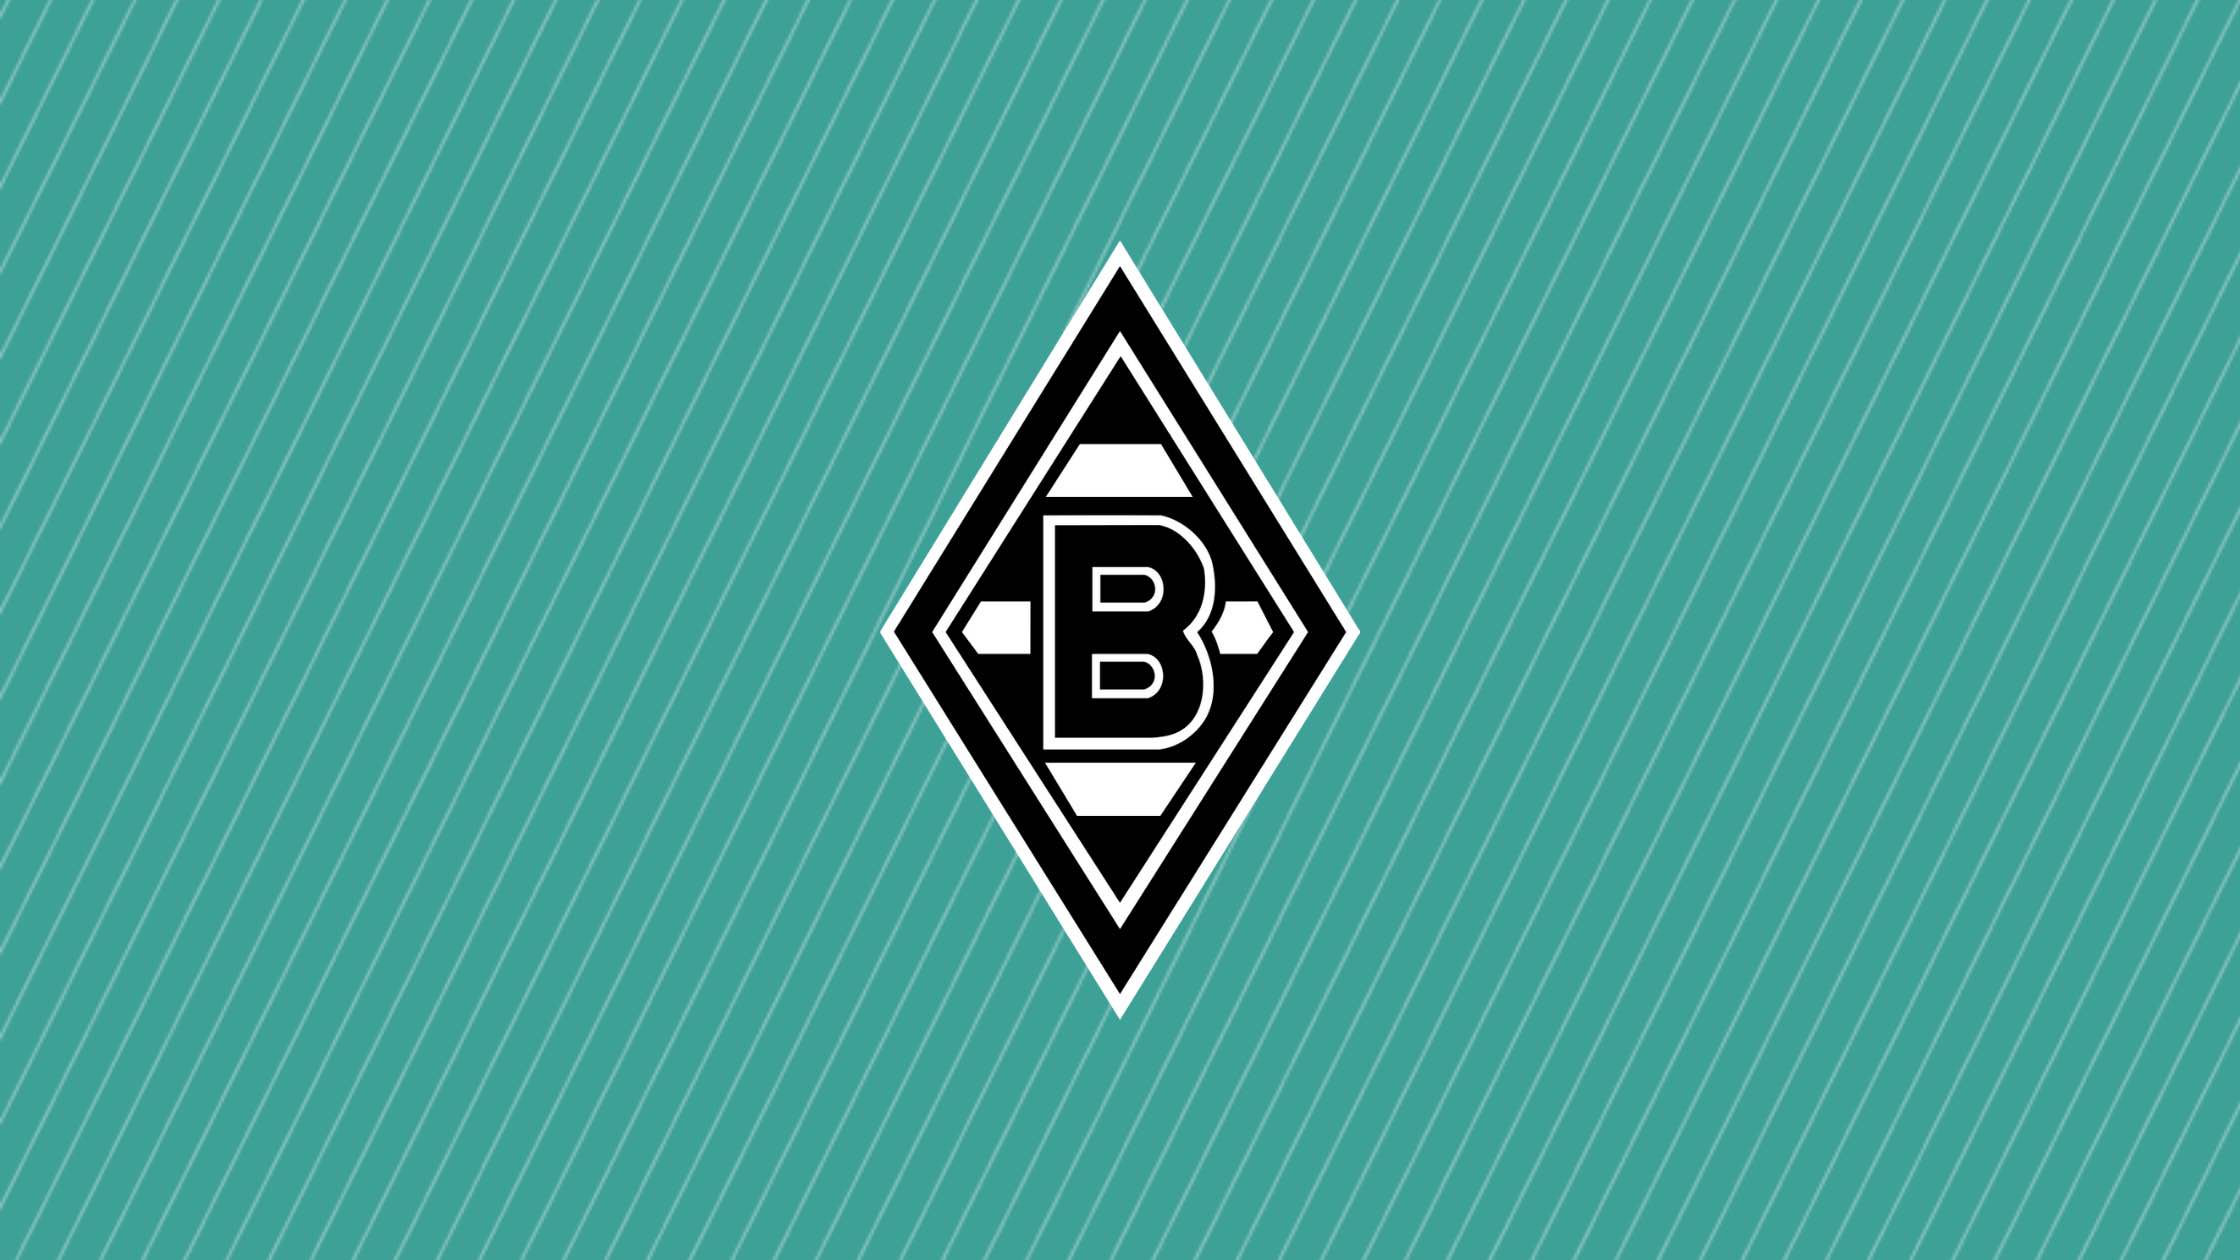 Borussia Mönchengladbach / Gladbach ist ein deutscher Traditionsverein in der Champions League. 2020/21 hat es Gladbach erstmals ins Achtelfinale geschafft.